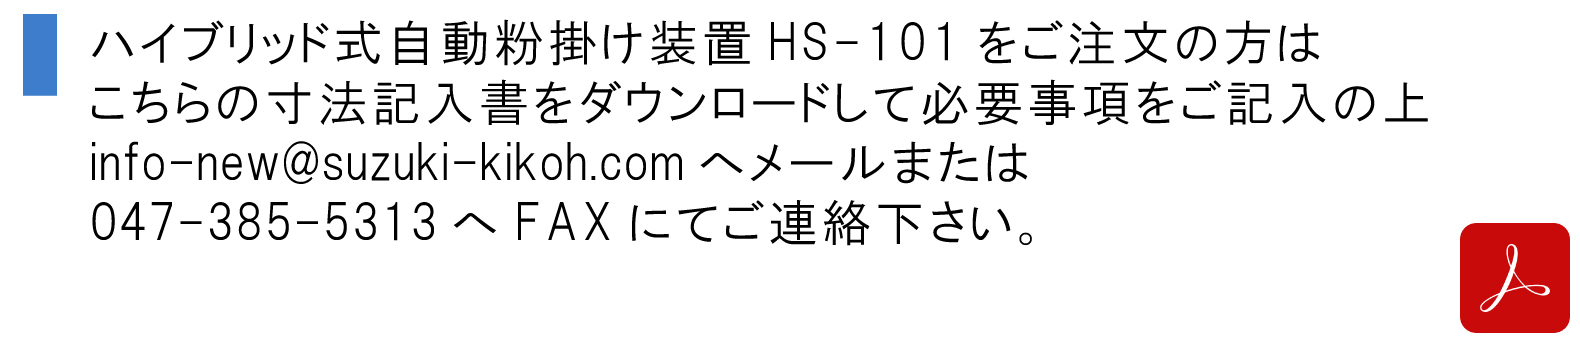 ハイブリッド式自動粉掛け装置HS-101をご注文の方はこちらの寸法記入書をダウンロードして必要事項をご記入の上、info-new@suzuki-kikoh.comへメールまたは047-385-5313へFAXにてご連絡下さい。